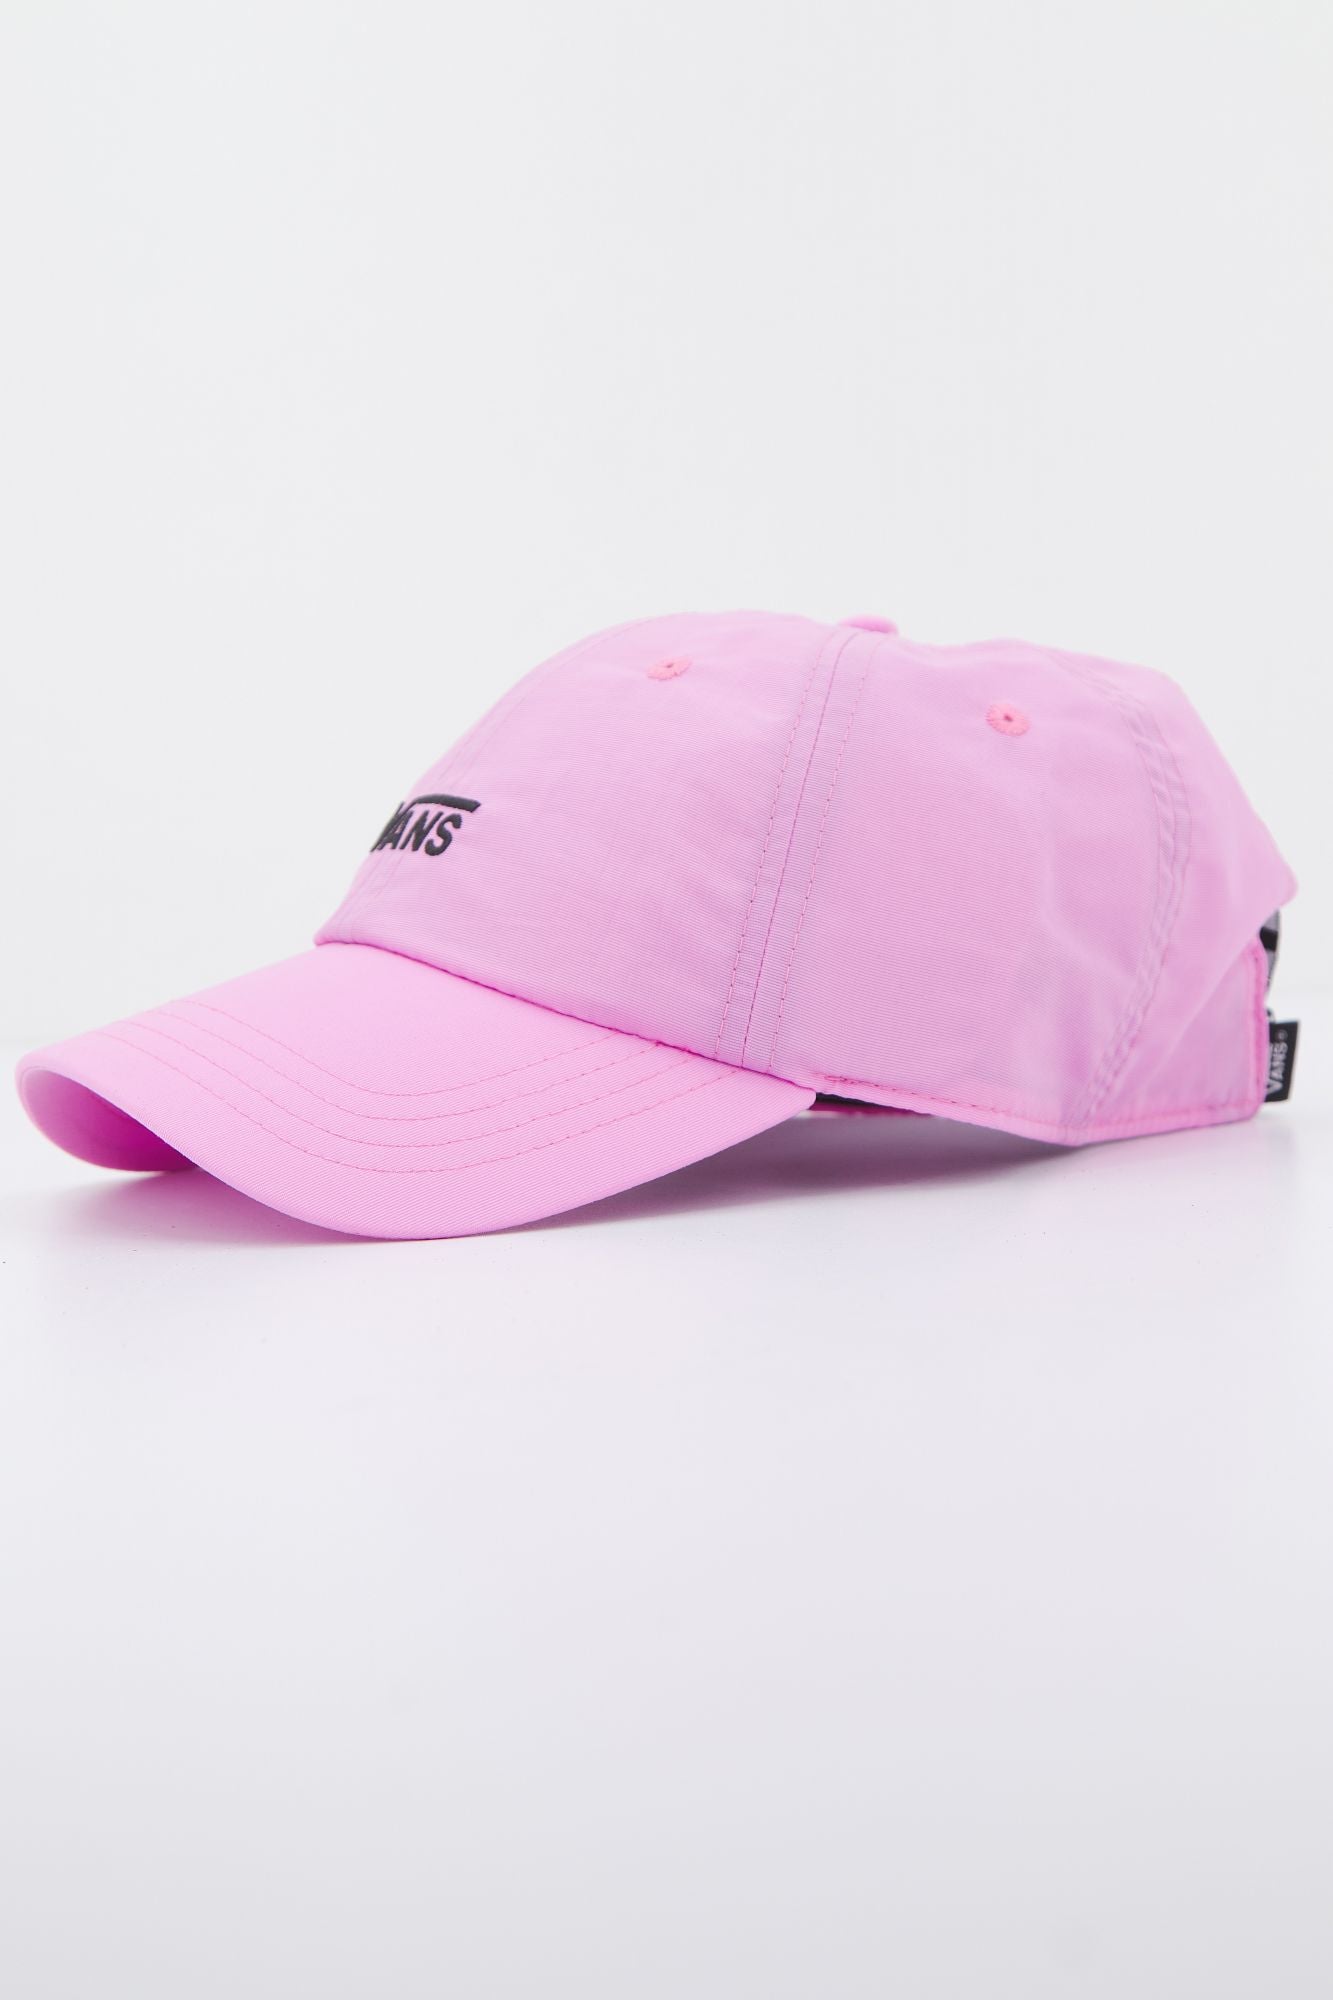 VANS HIGH BACK CAP en color ROSA (3)